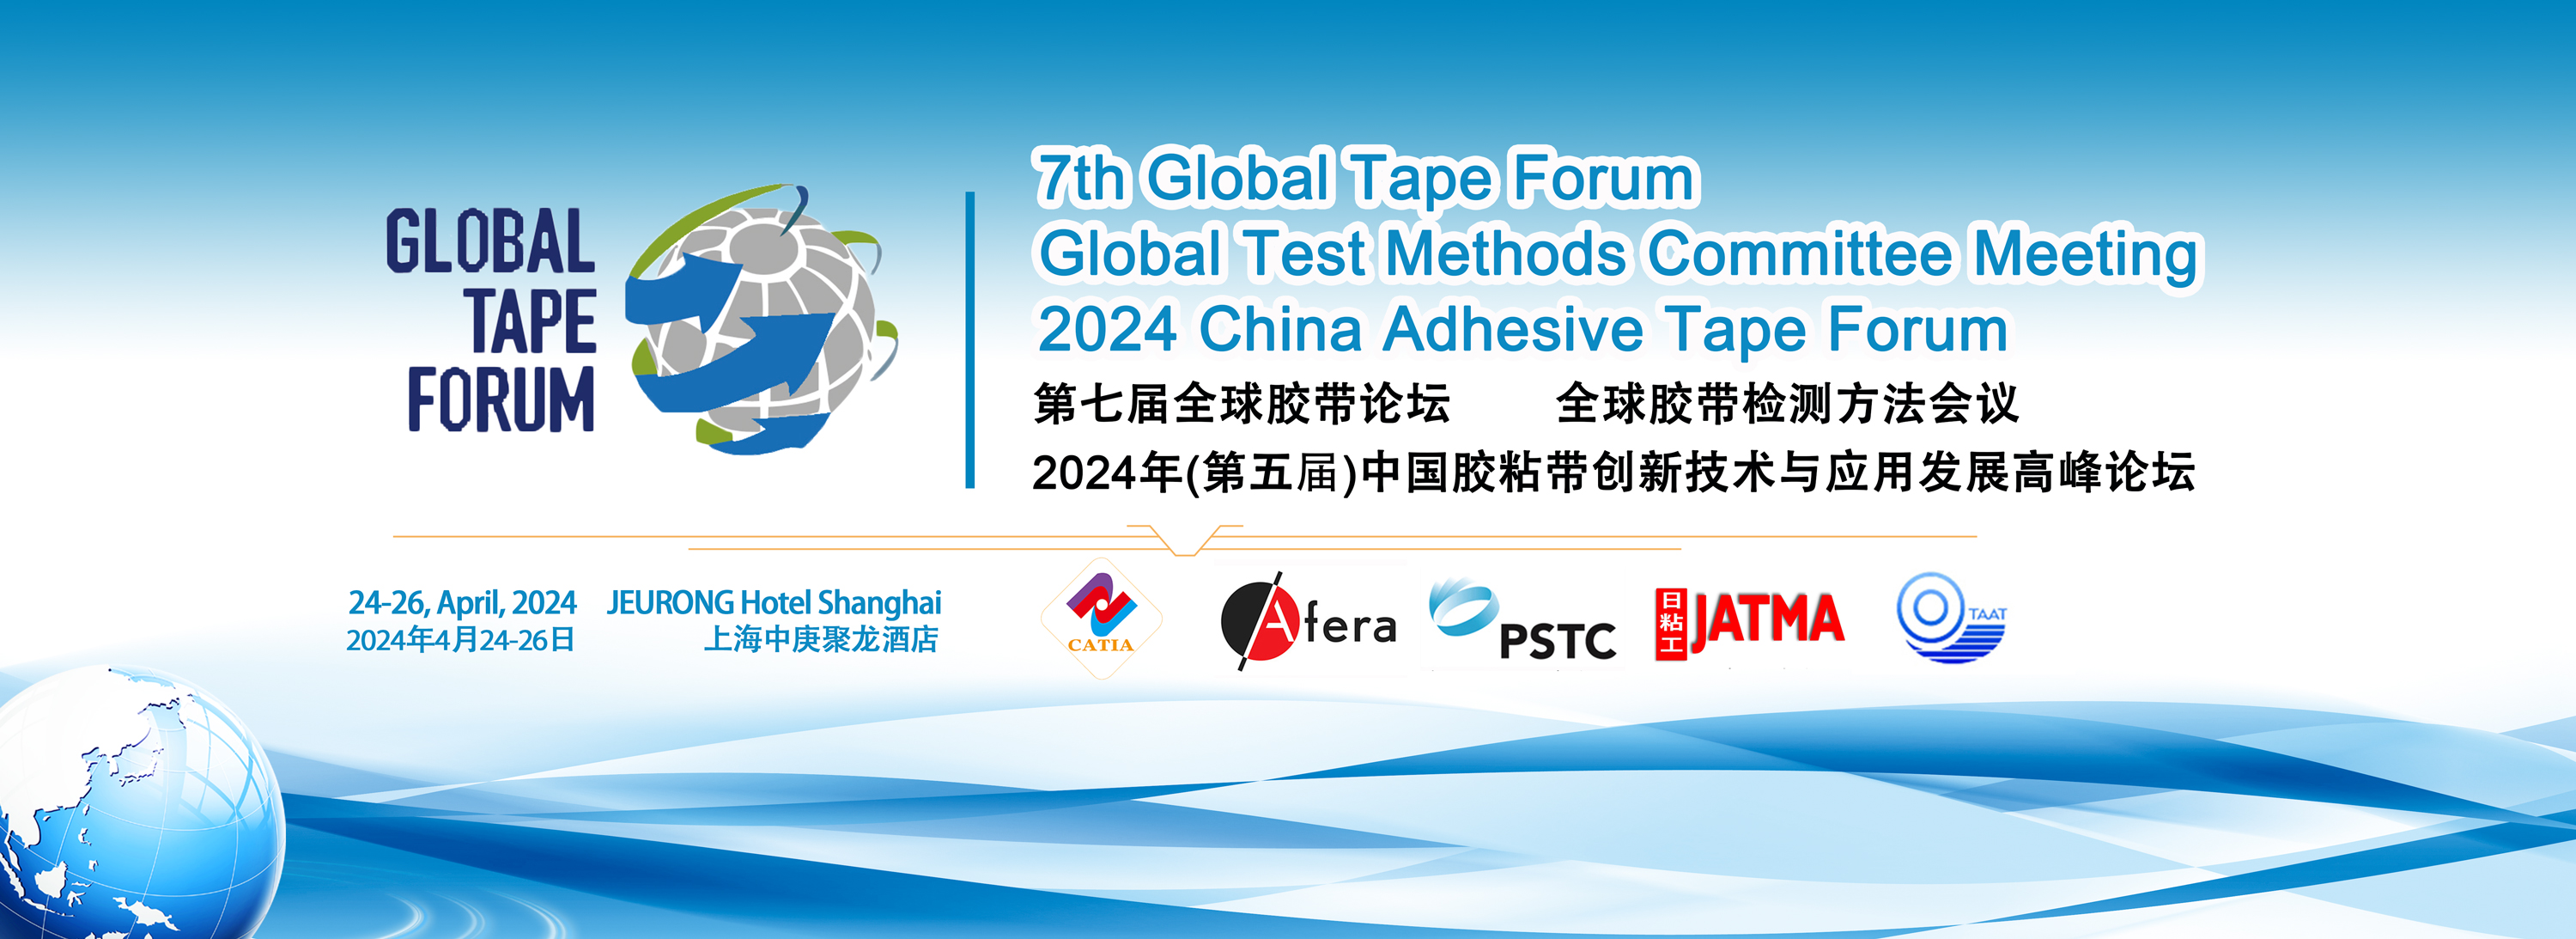 第七届全球胶带论坛/全球胶带检测方法会议&2024年(第五届)中国胶粘带创新技术与应用发展高峰论坛